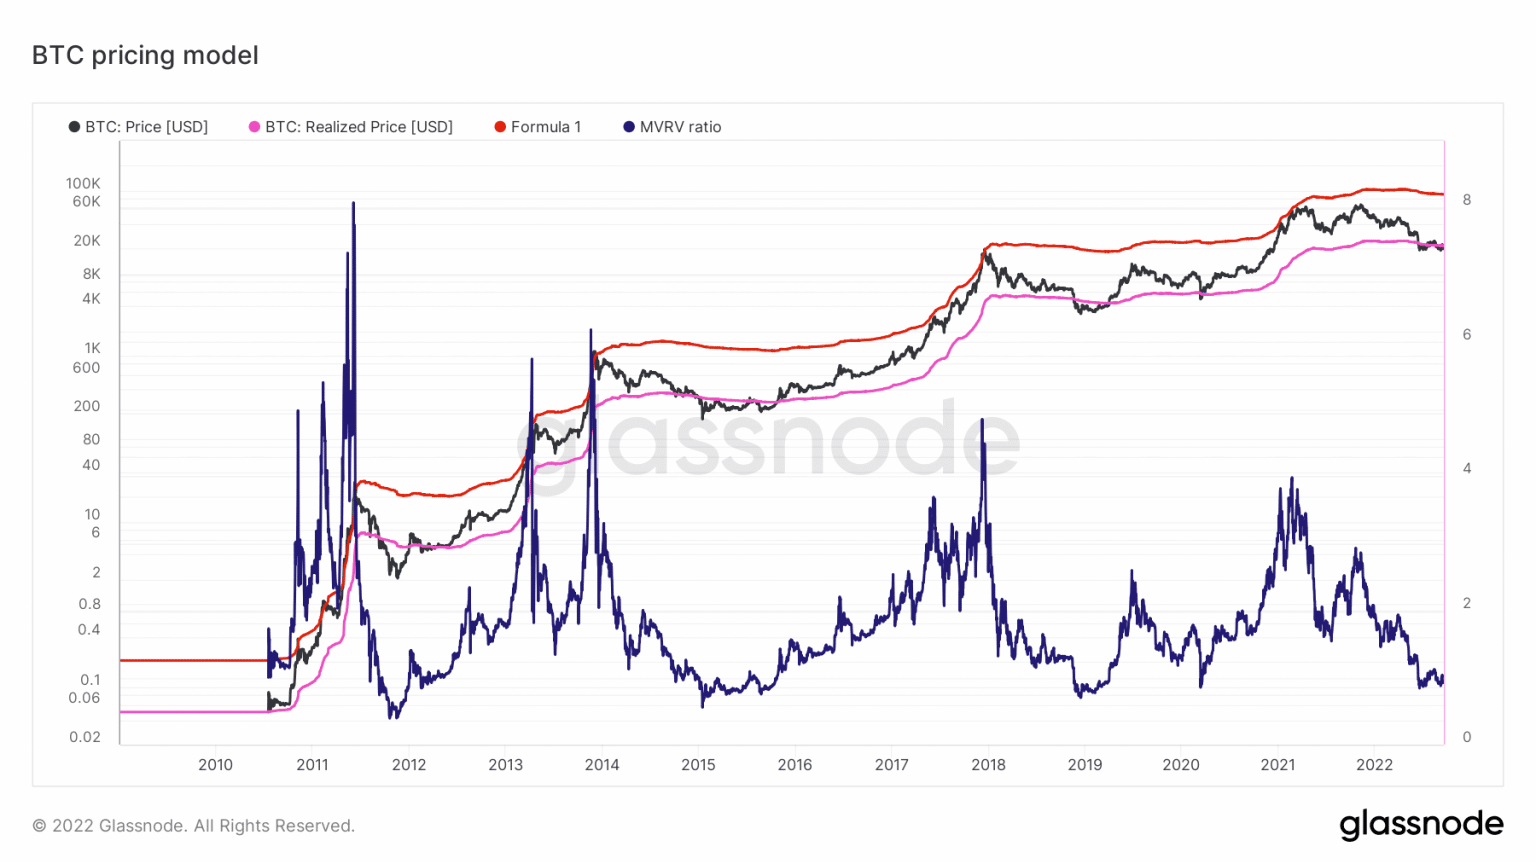 Giá Coin hôm nay 19/09: Bitcoin lần đầu đóng cửa tuần dưới $ 19.500 kể từ tháng 6/2022, Ethereum cùng altcoin chìm trong sắc đỏ